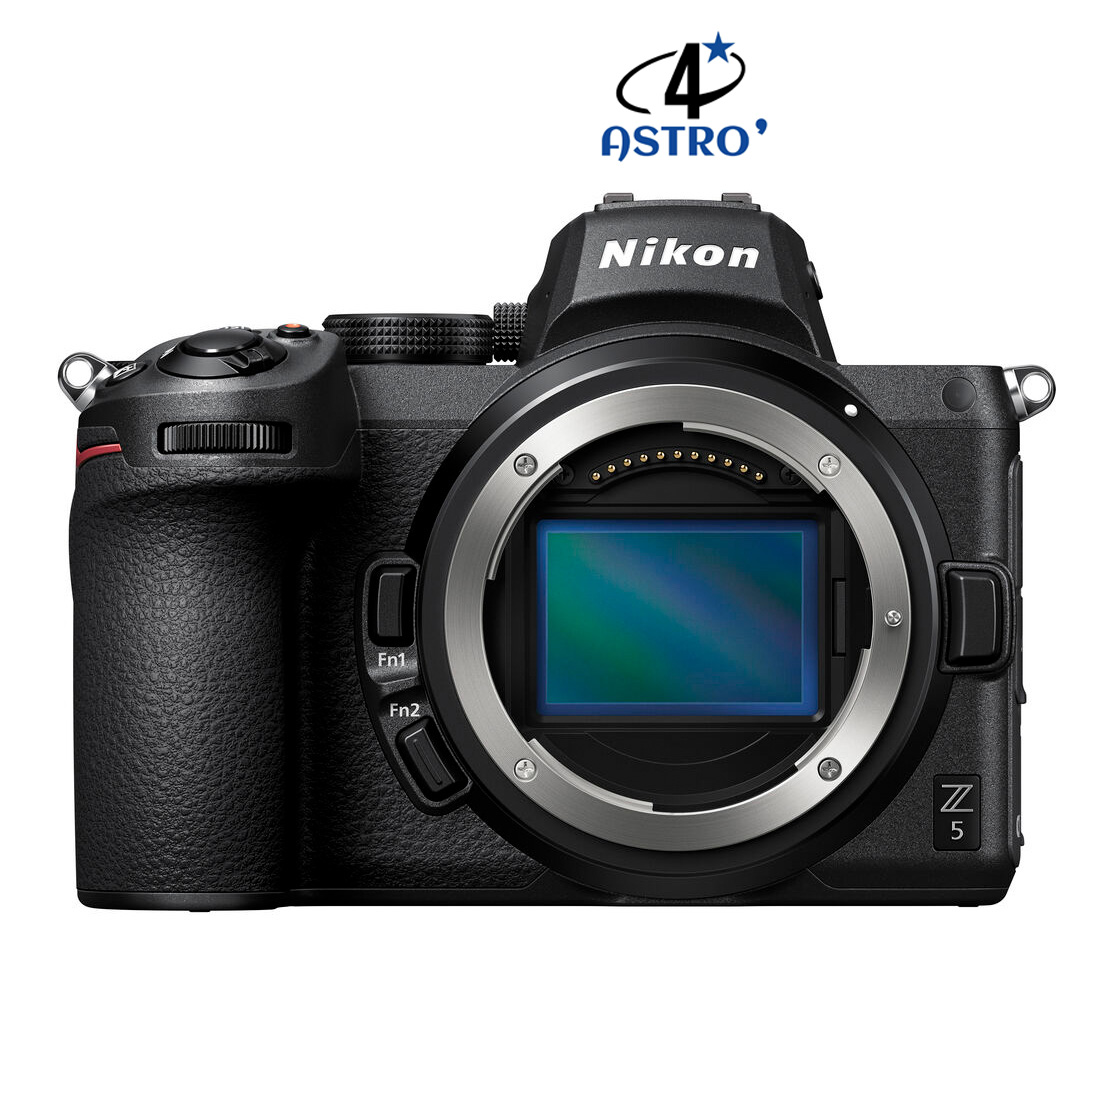 Hybride Nikon Z5 neuf défiltré + refiltré 4'Astro